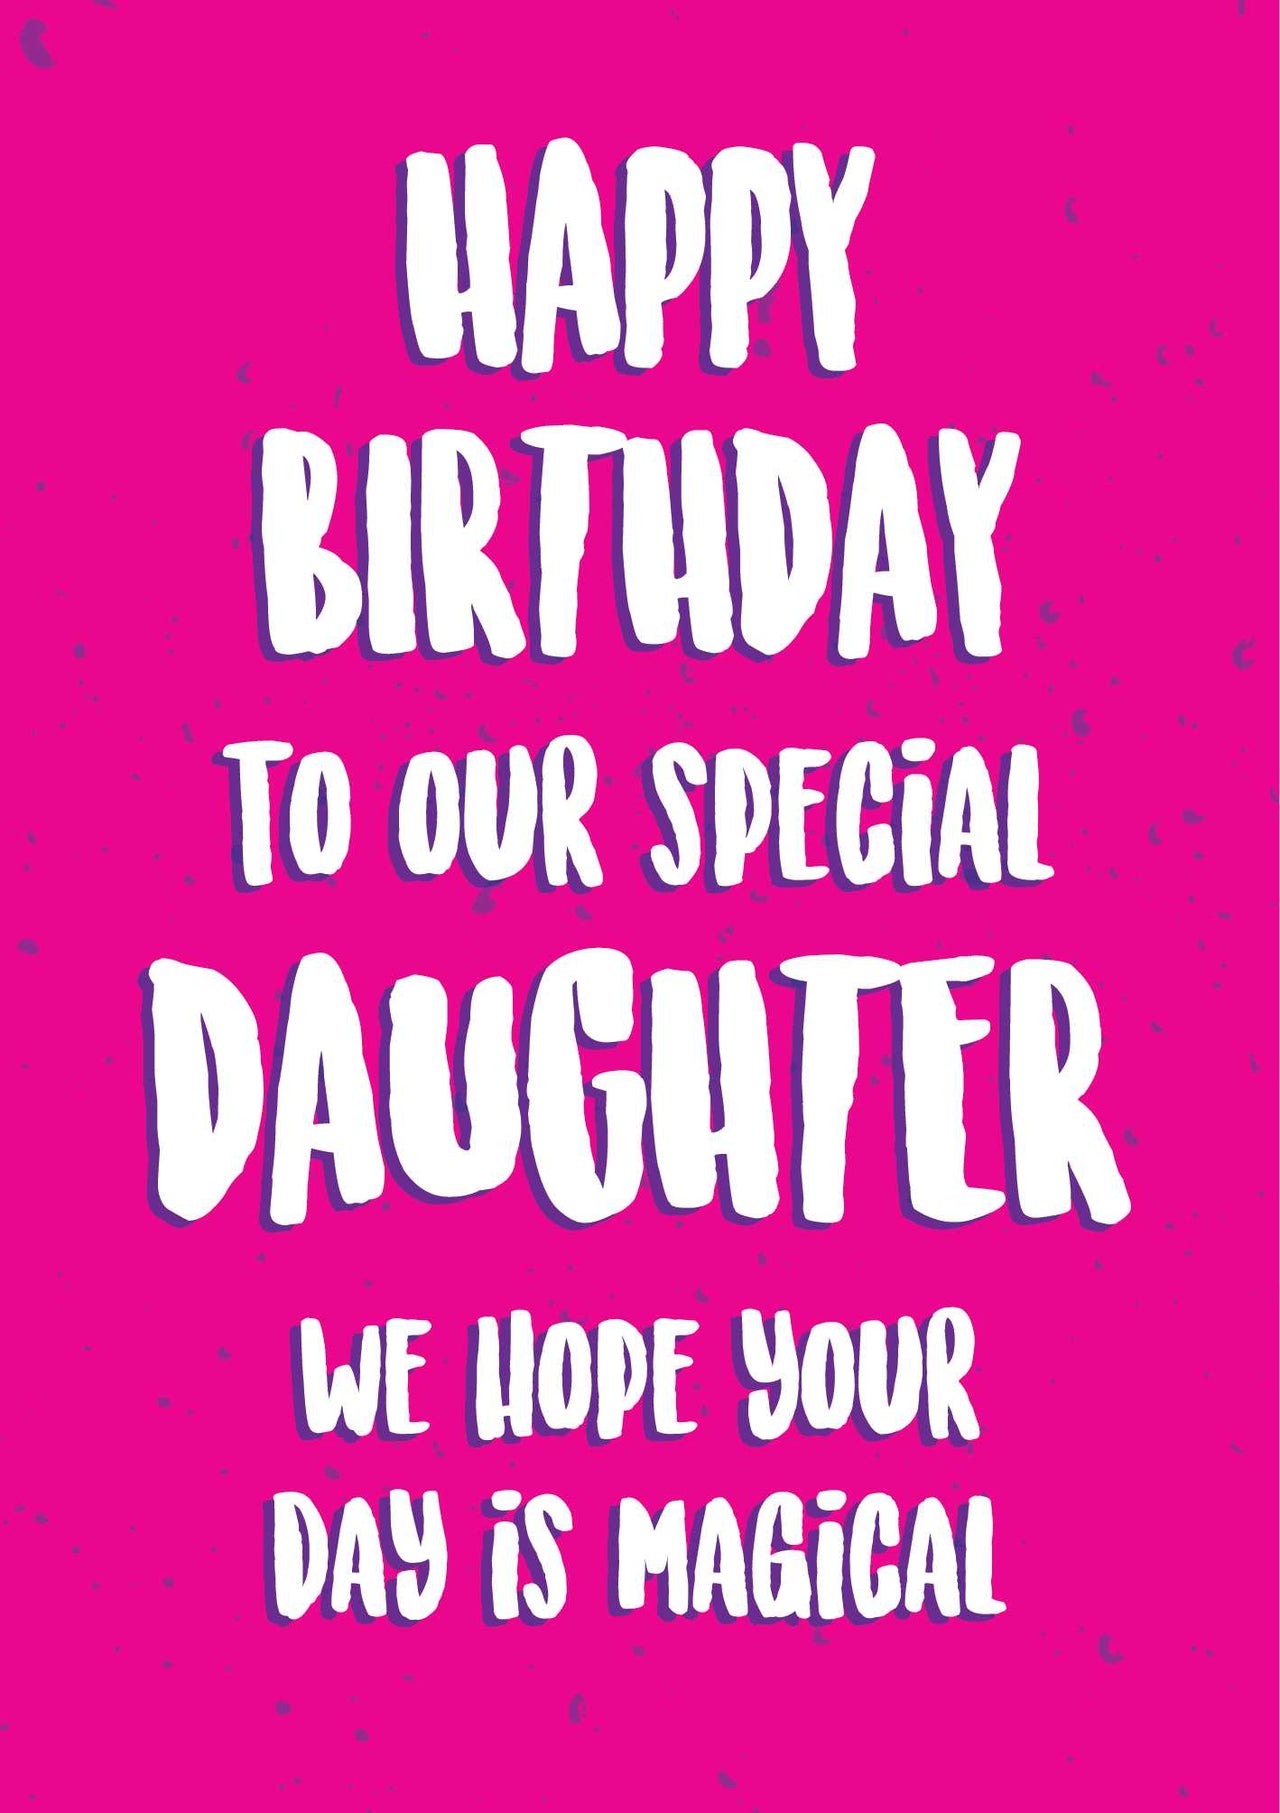 Anoela Happy Birthday Card - - Master Kids Company